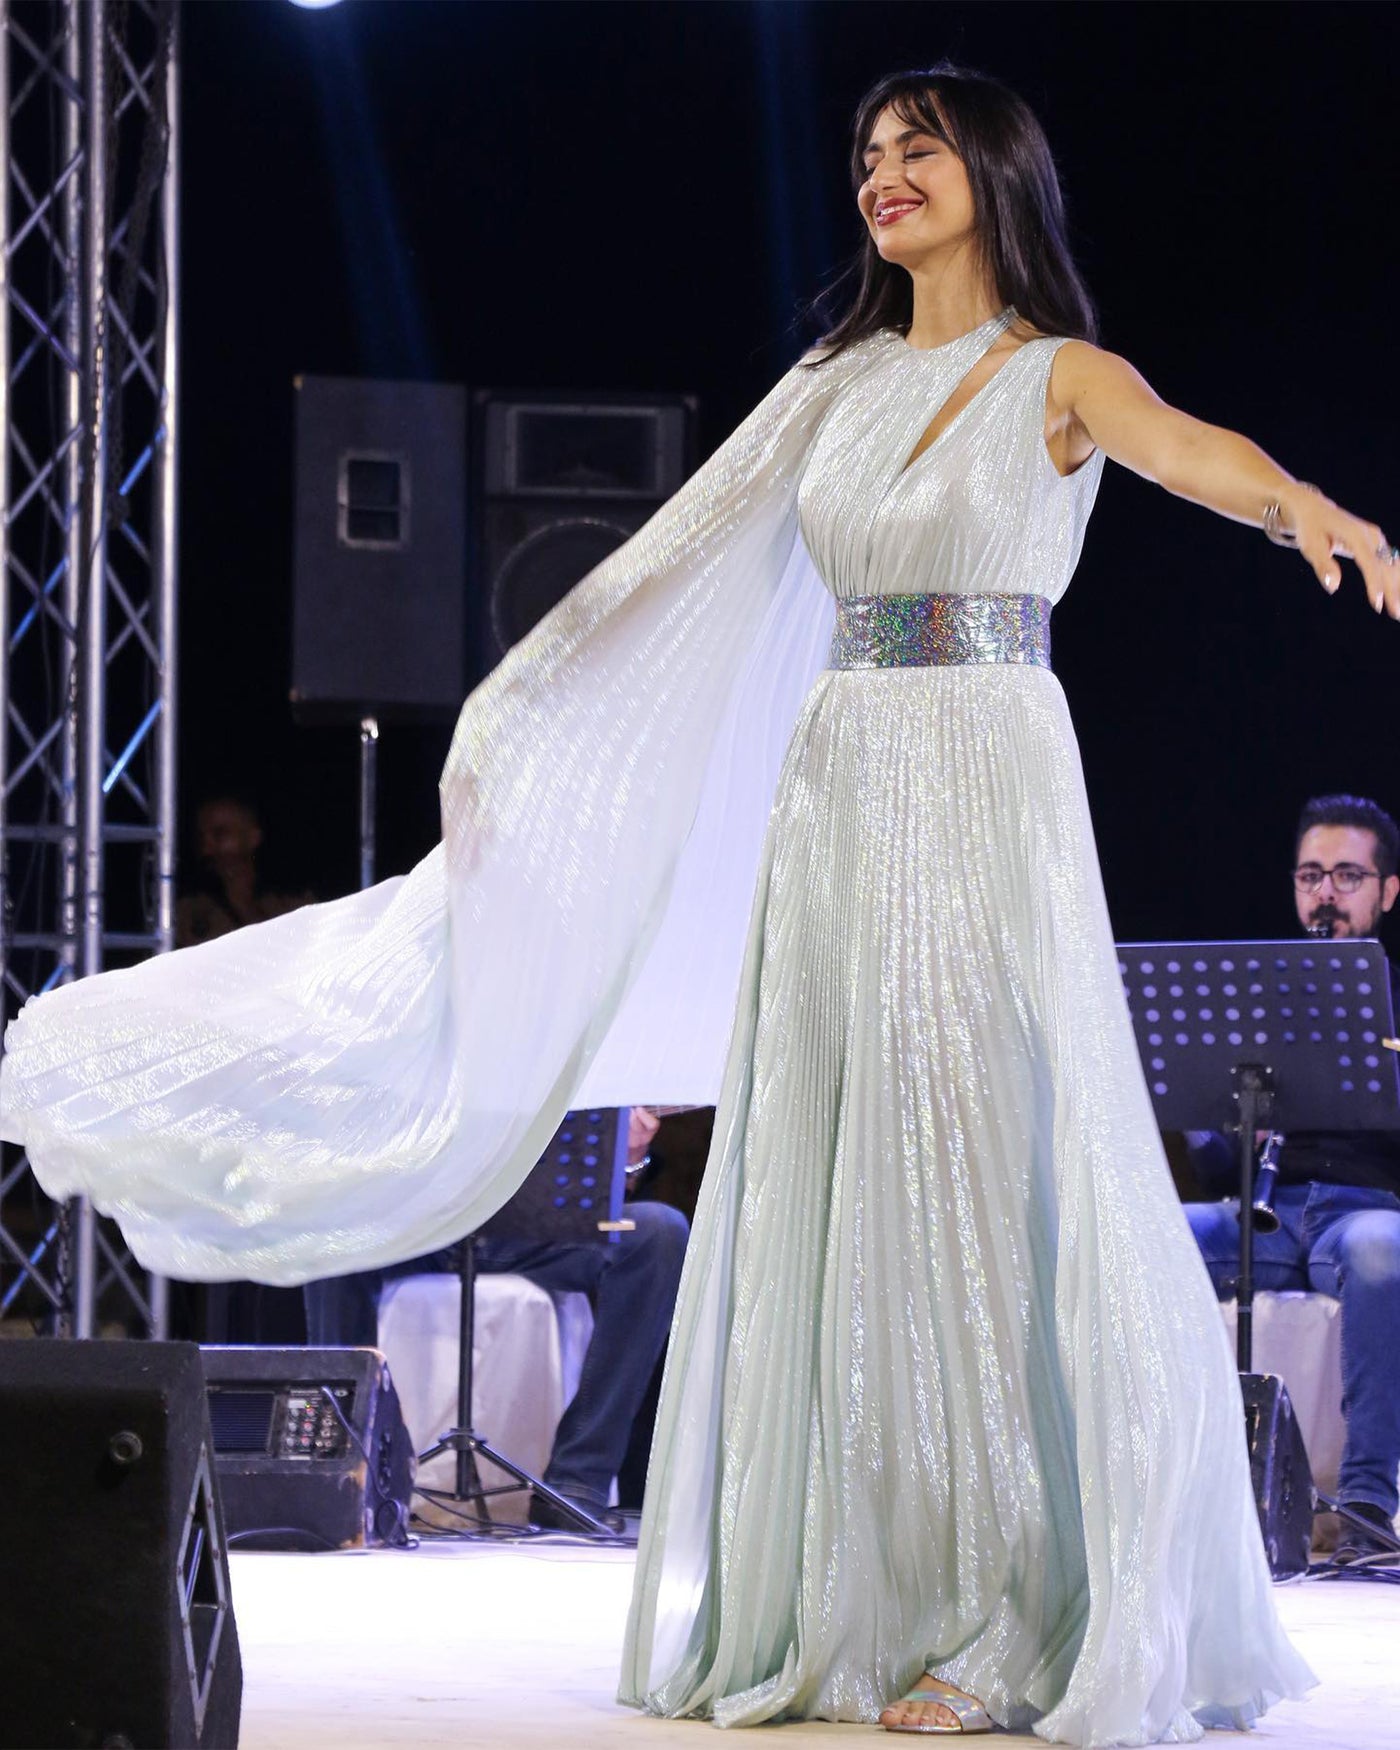 Singer Faia Younan